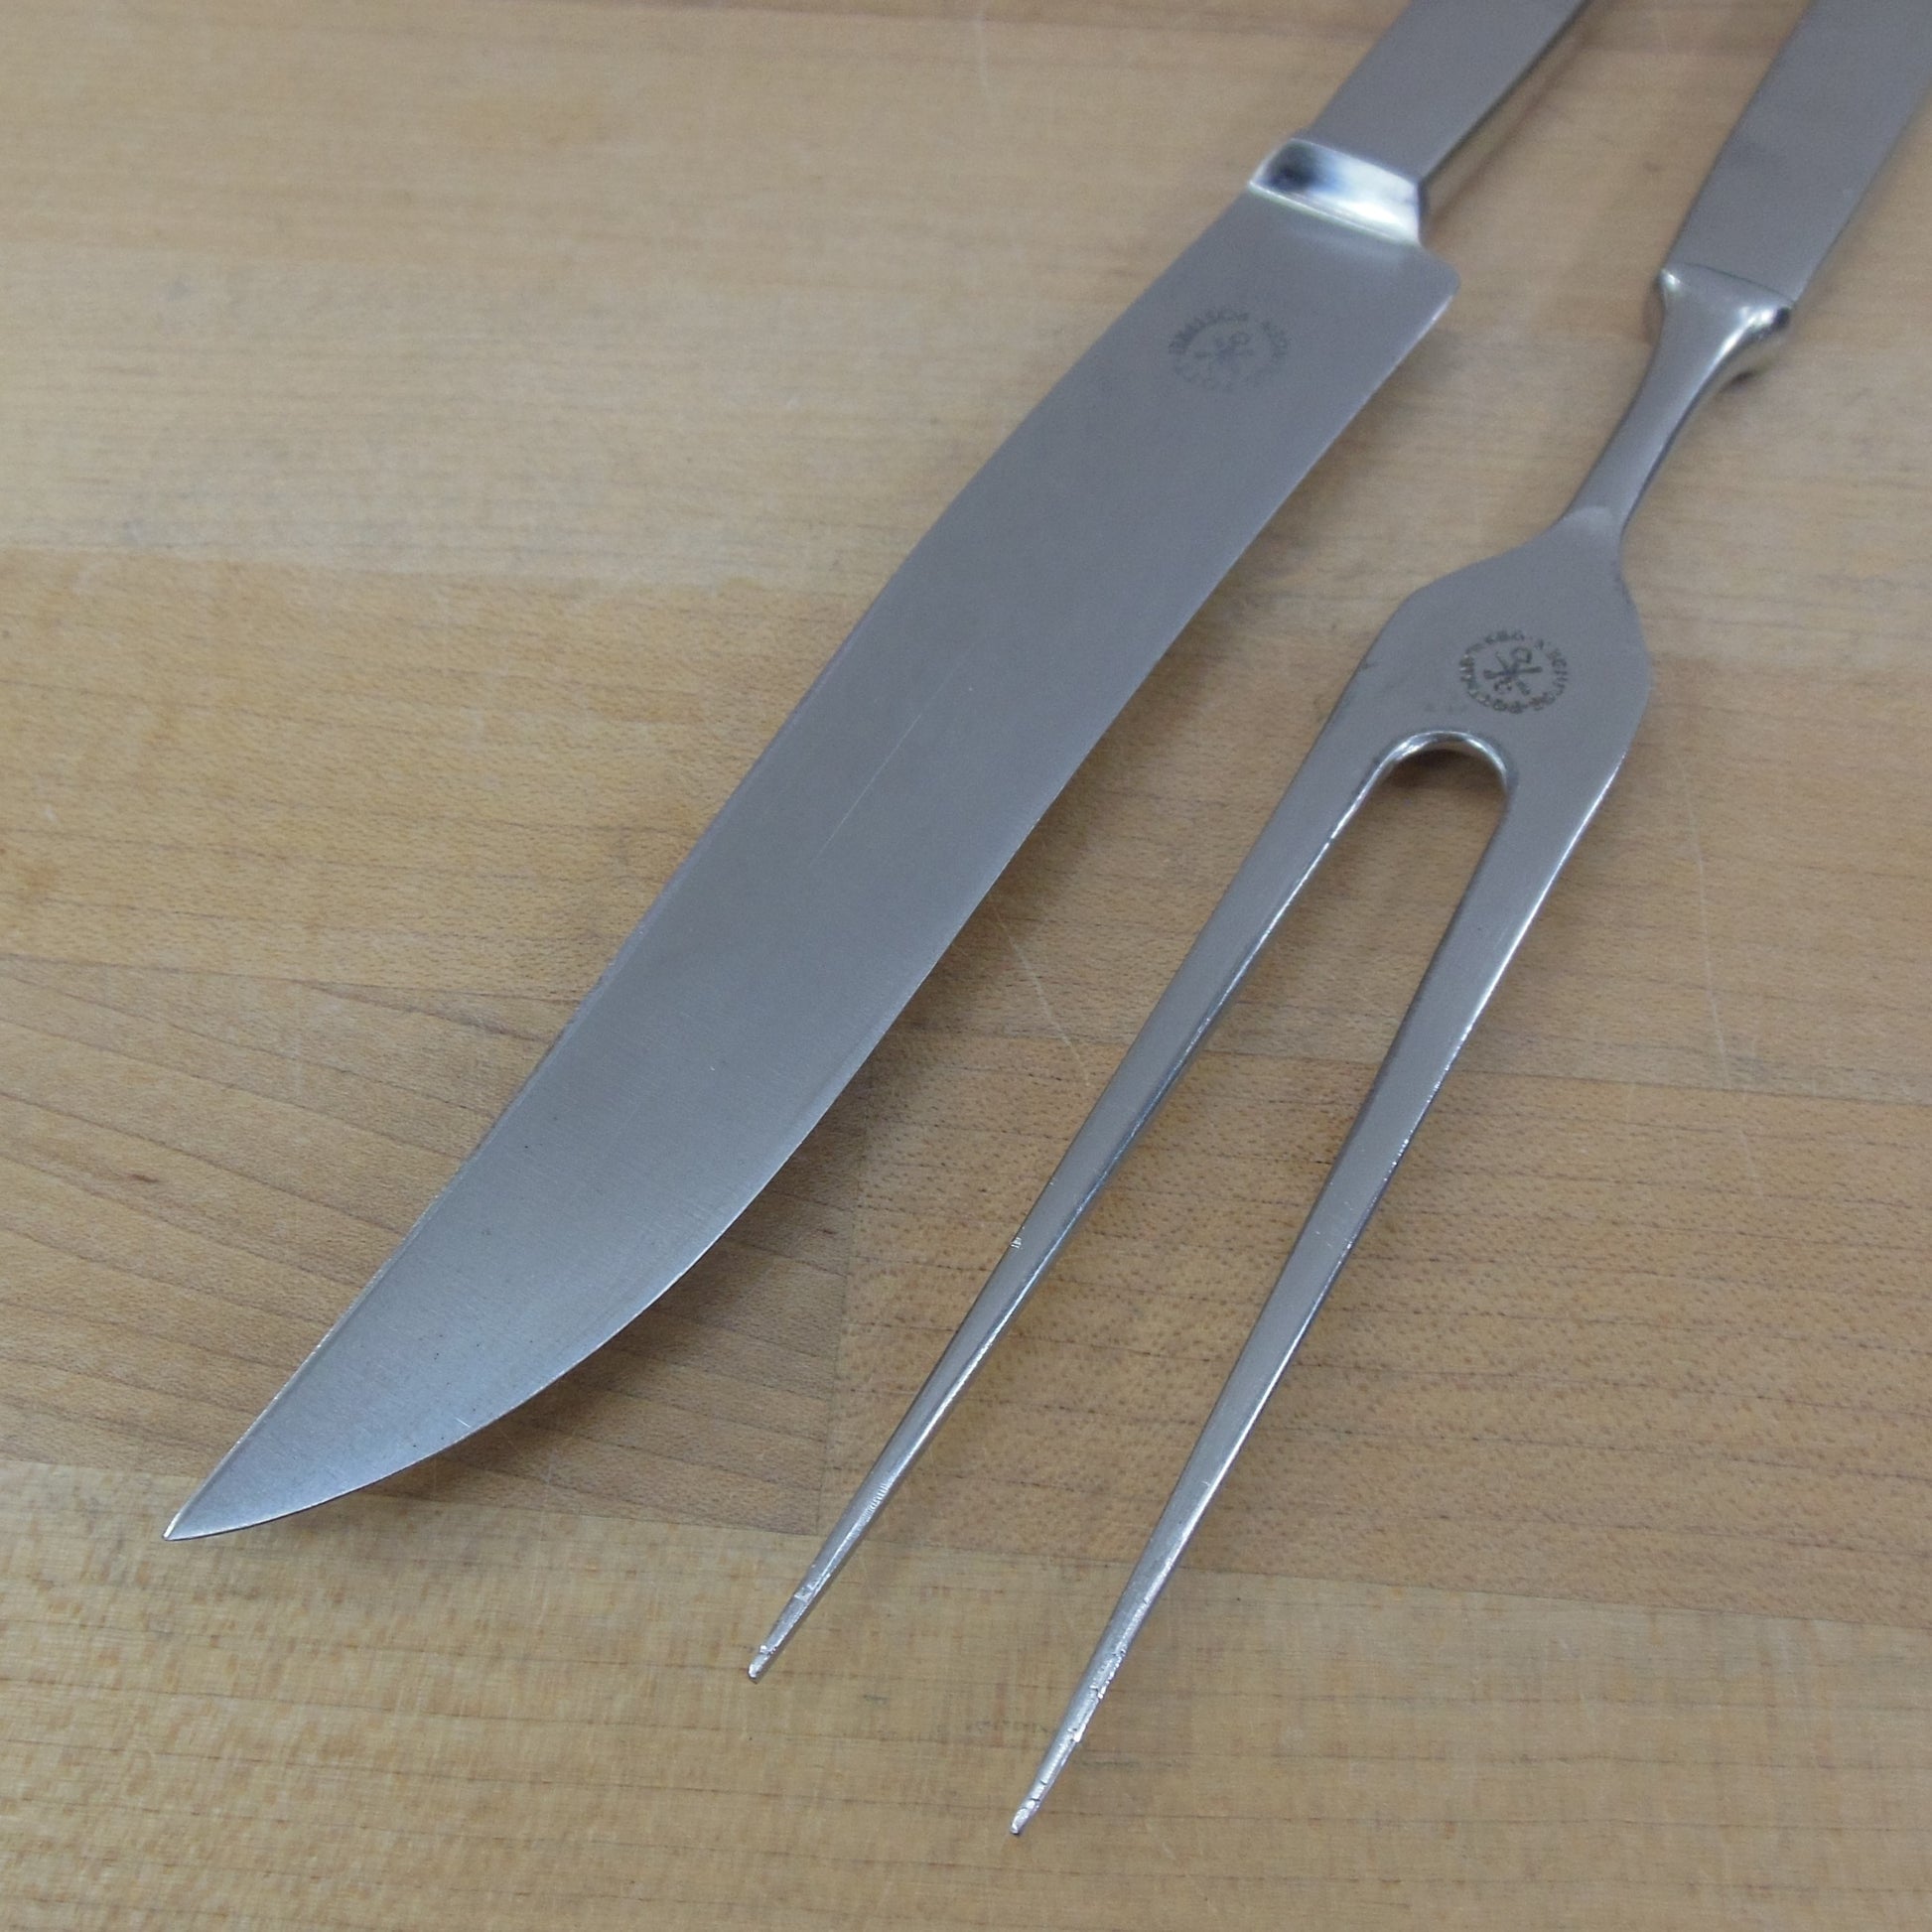 C. Hugo Pott Solingen Germany 2720 Stainless Carving Fork Knife Set Vintage MCM